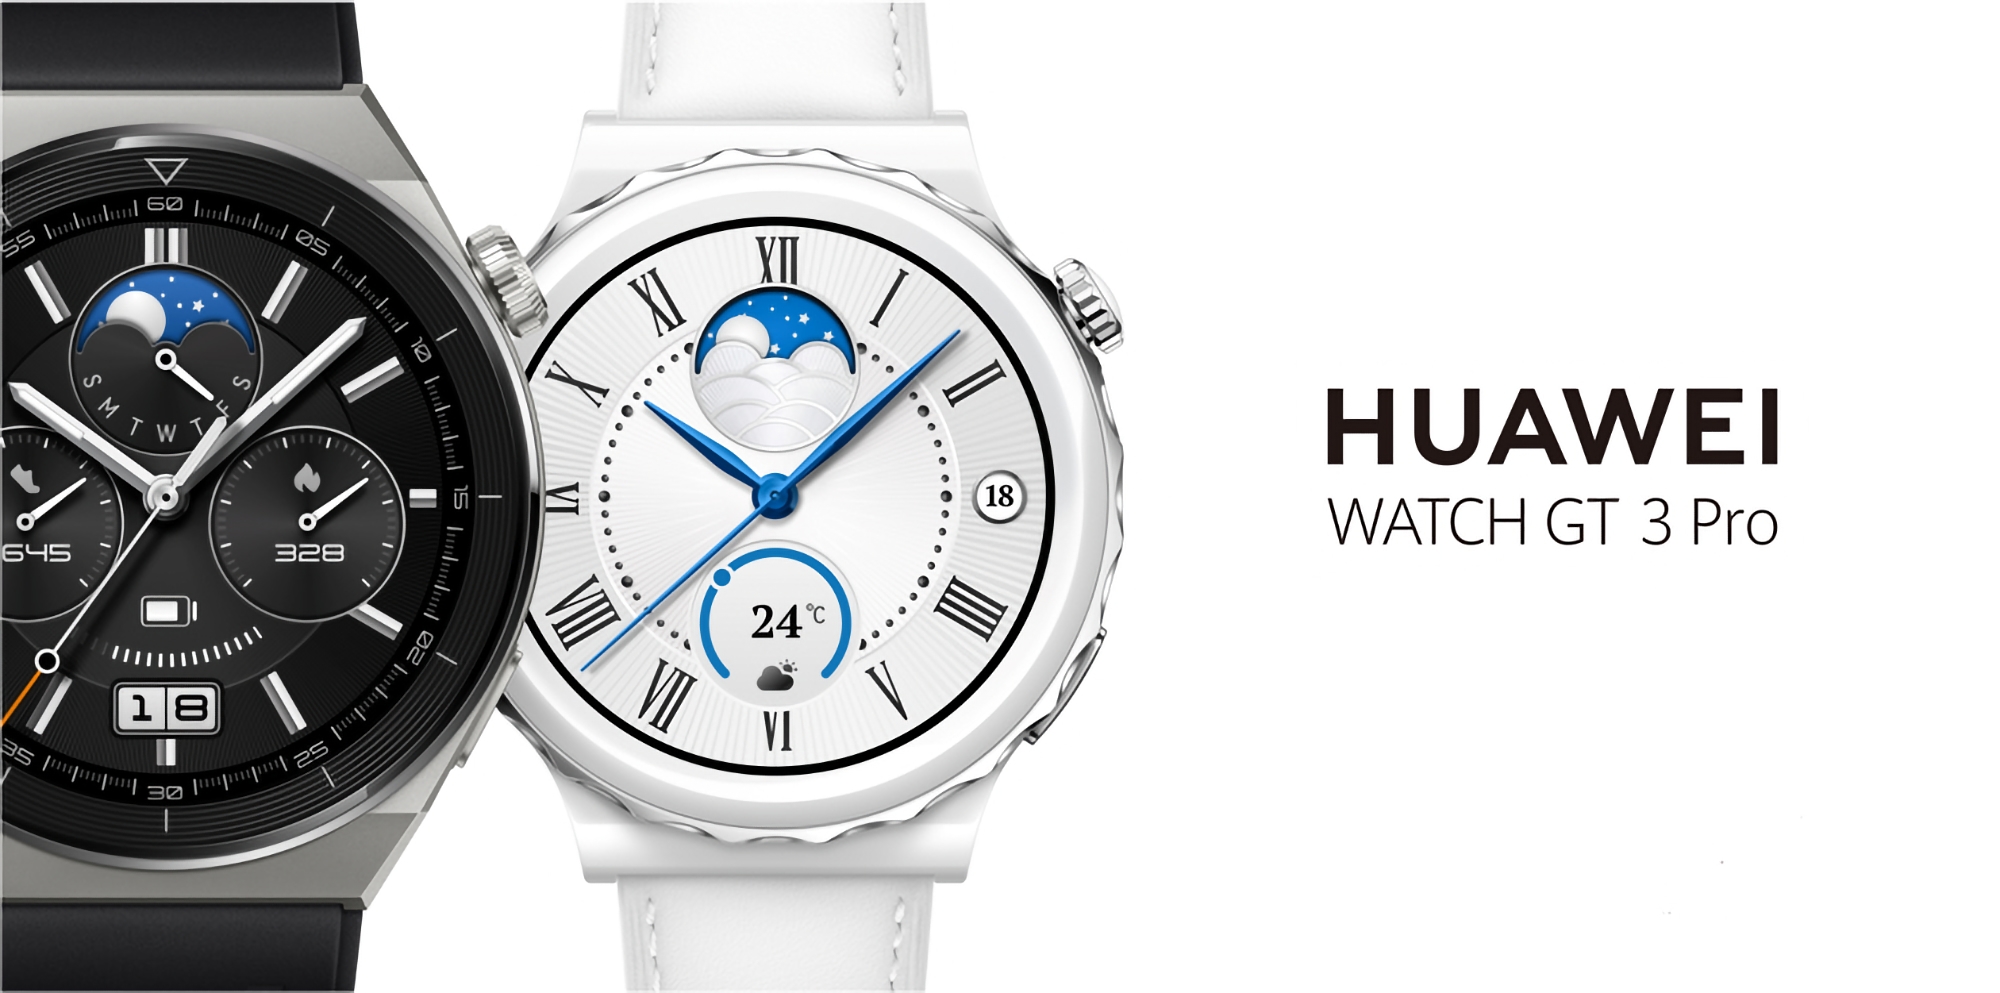 Huawei Watch GT 3 Pro hat eine neue Software-Version auf dem globalen Markt erhalten